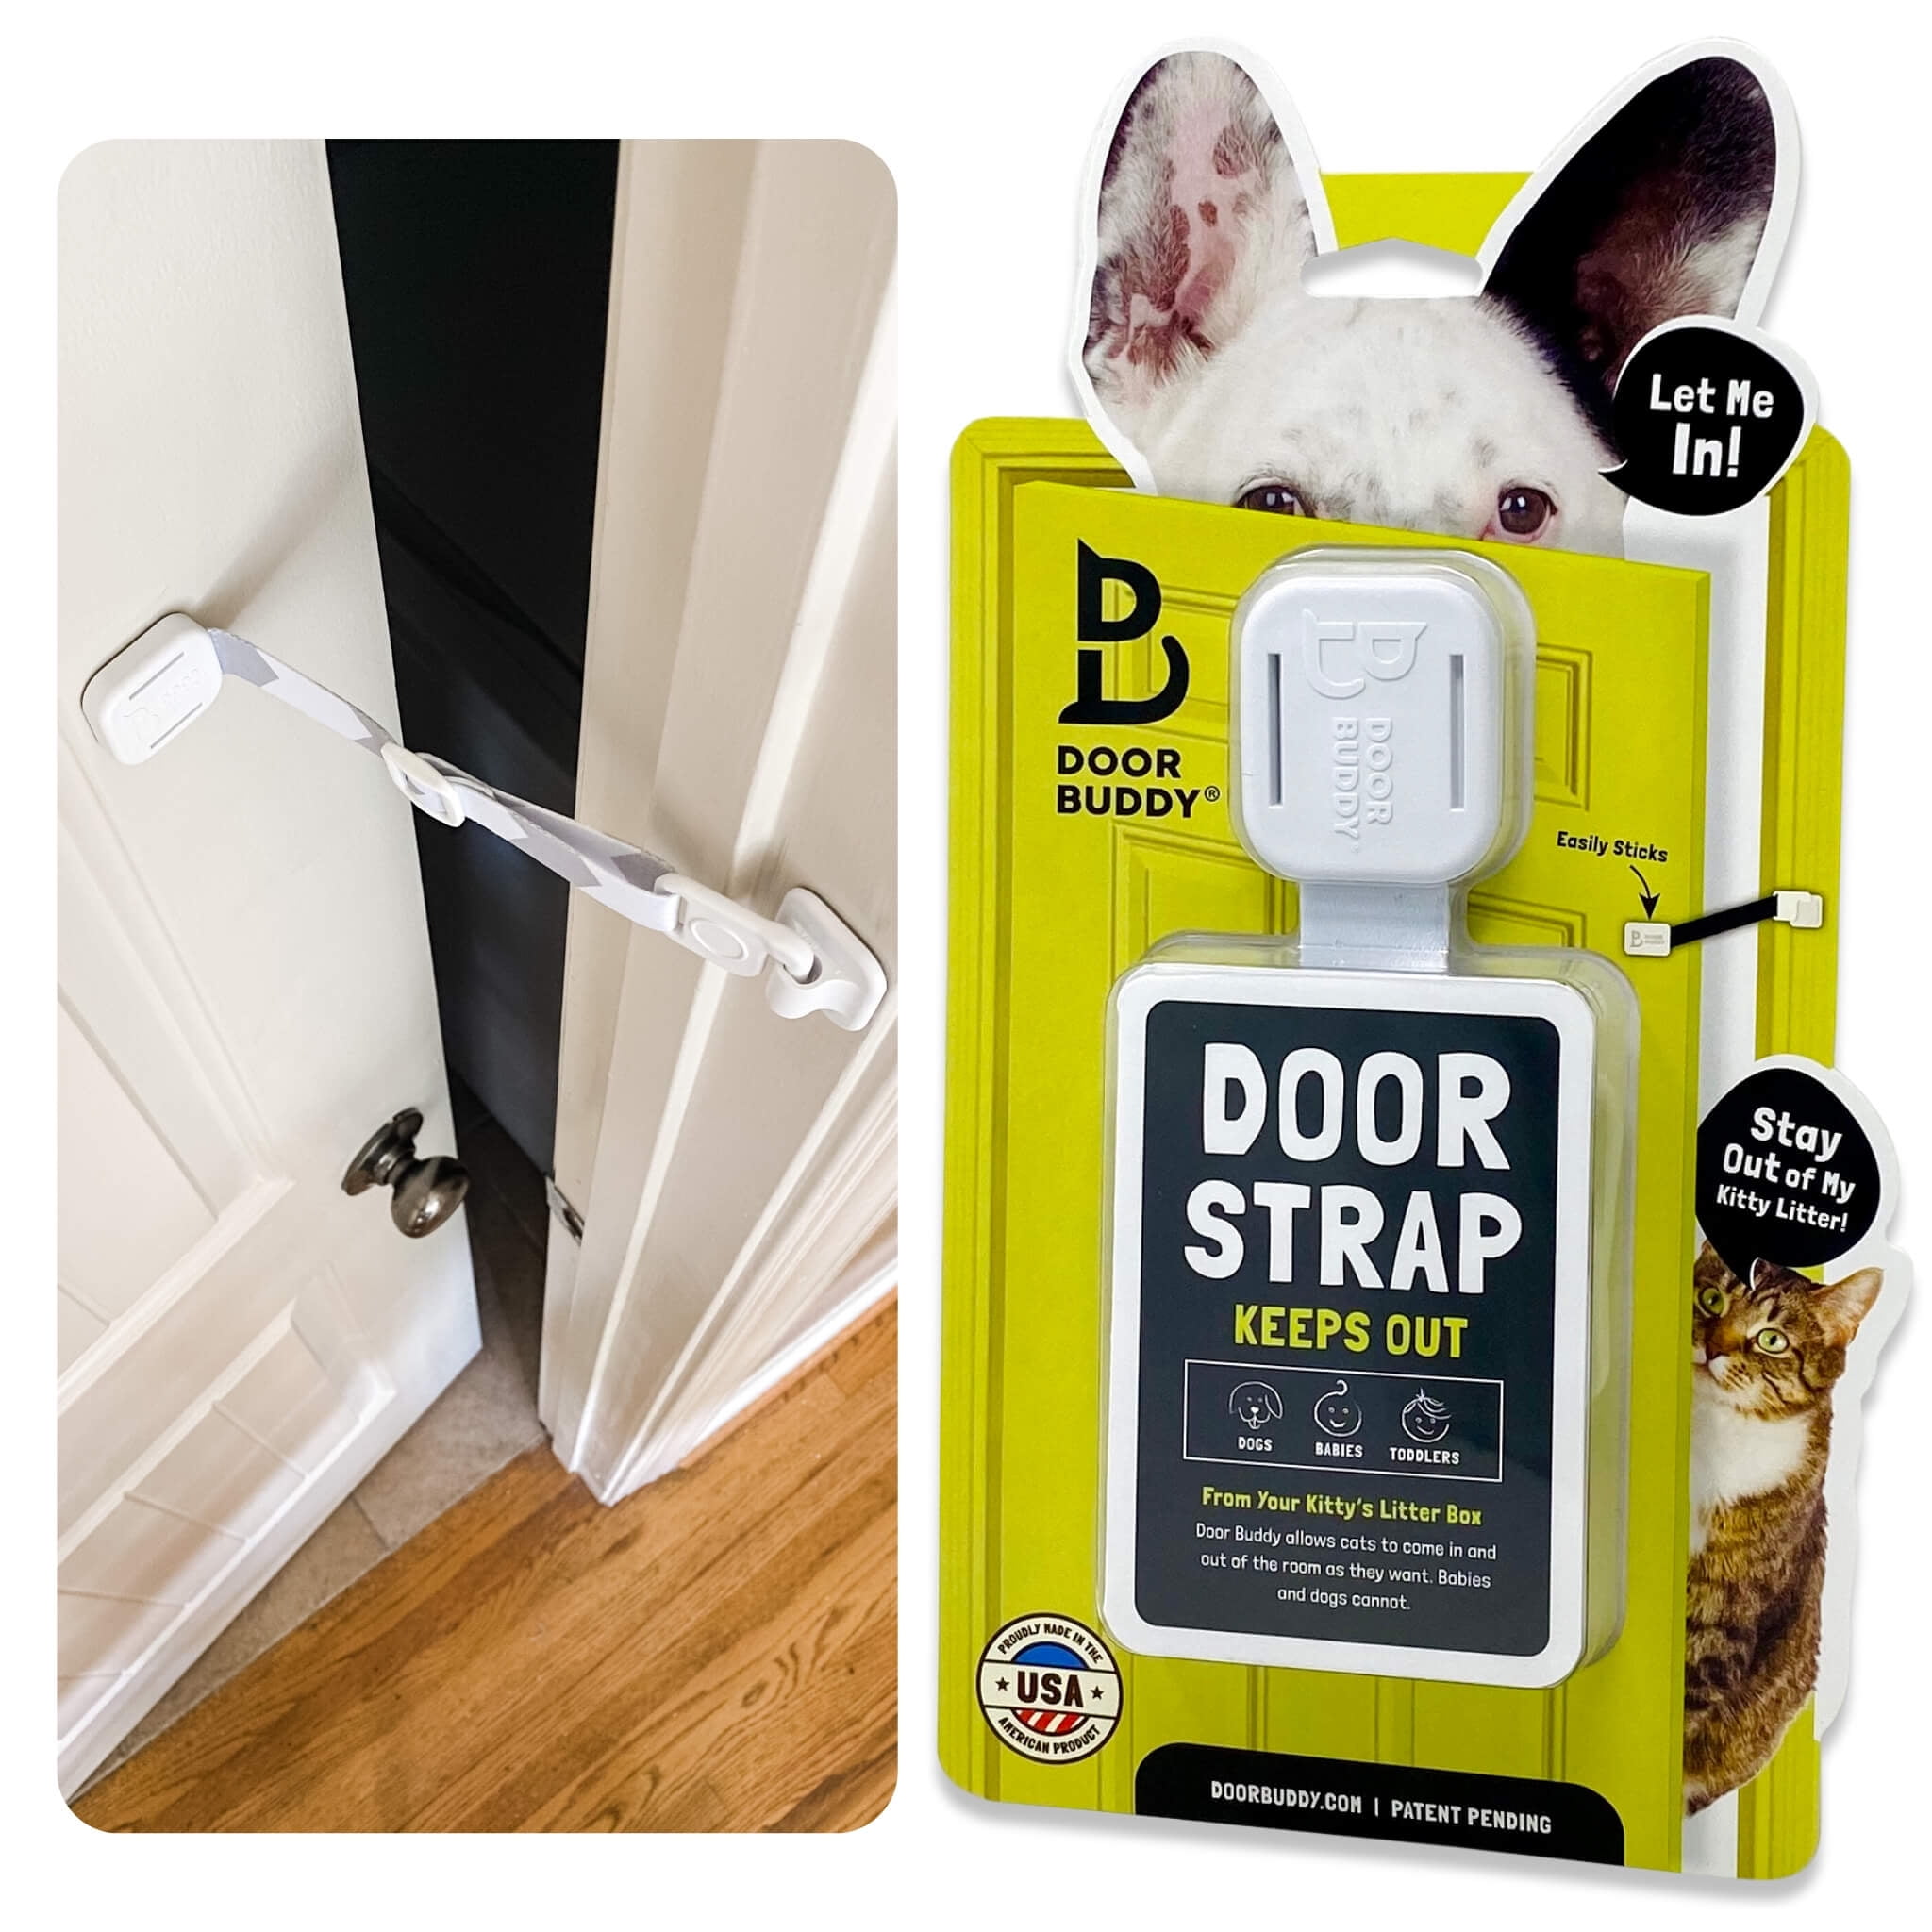 Door Buddy Door Latch To Dog Proof Litter Box Great Interior Cat Door Alternative Walmart Com Walmart Com